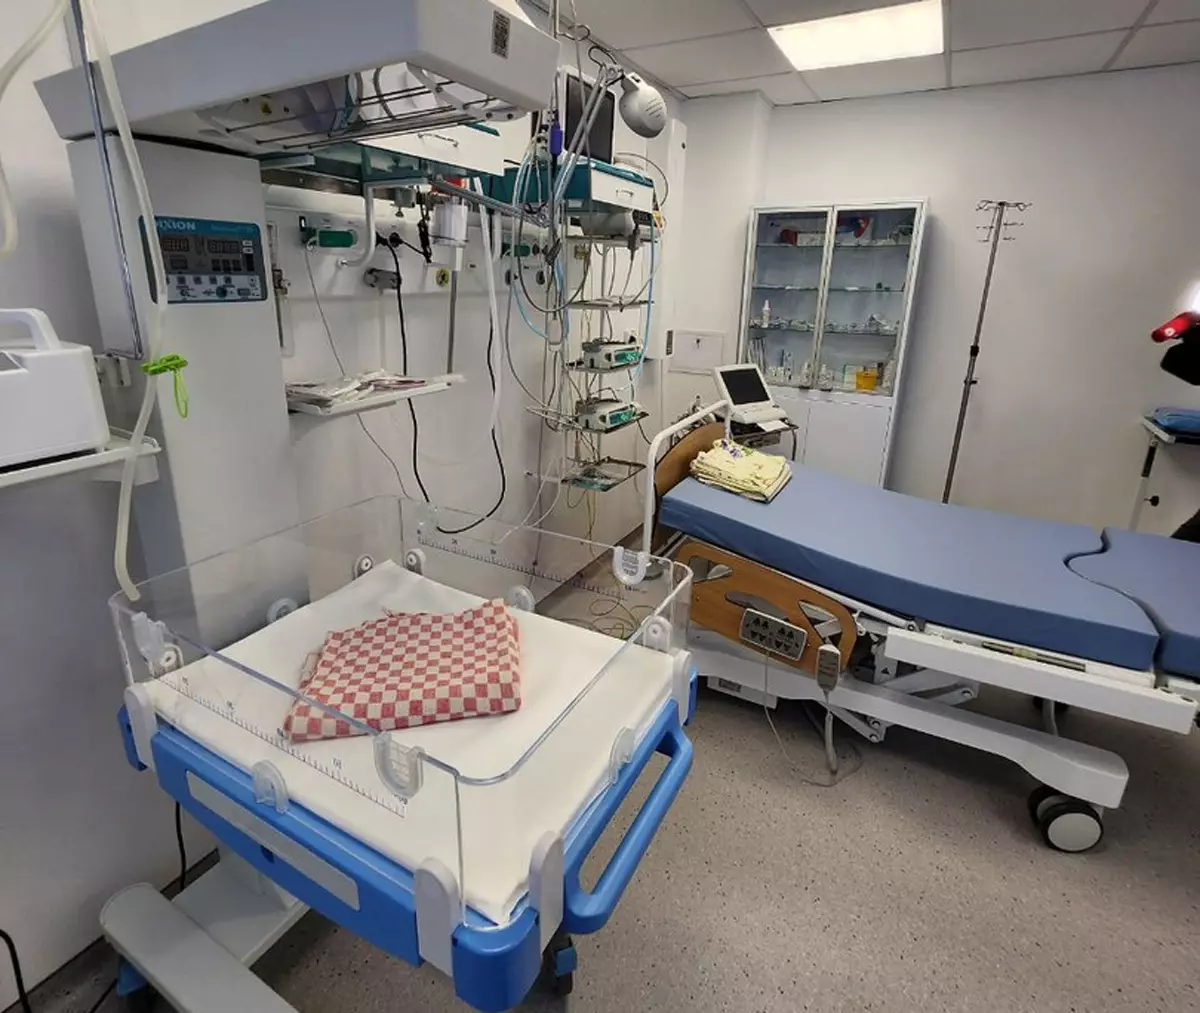 В отделении созданы комфортные условия для размещения пациентов и персонала.